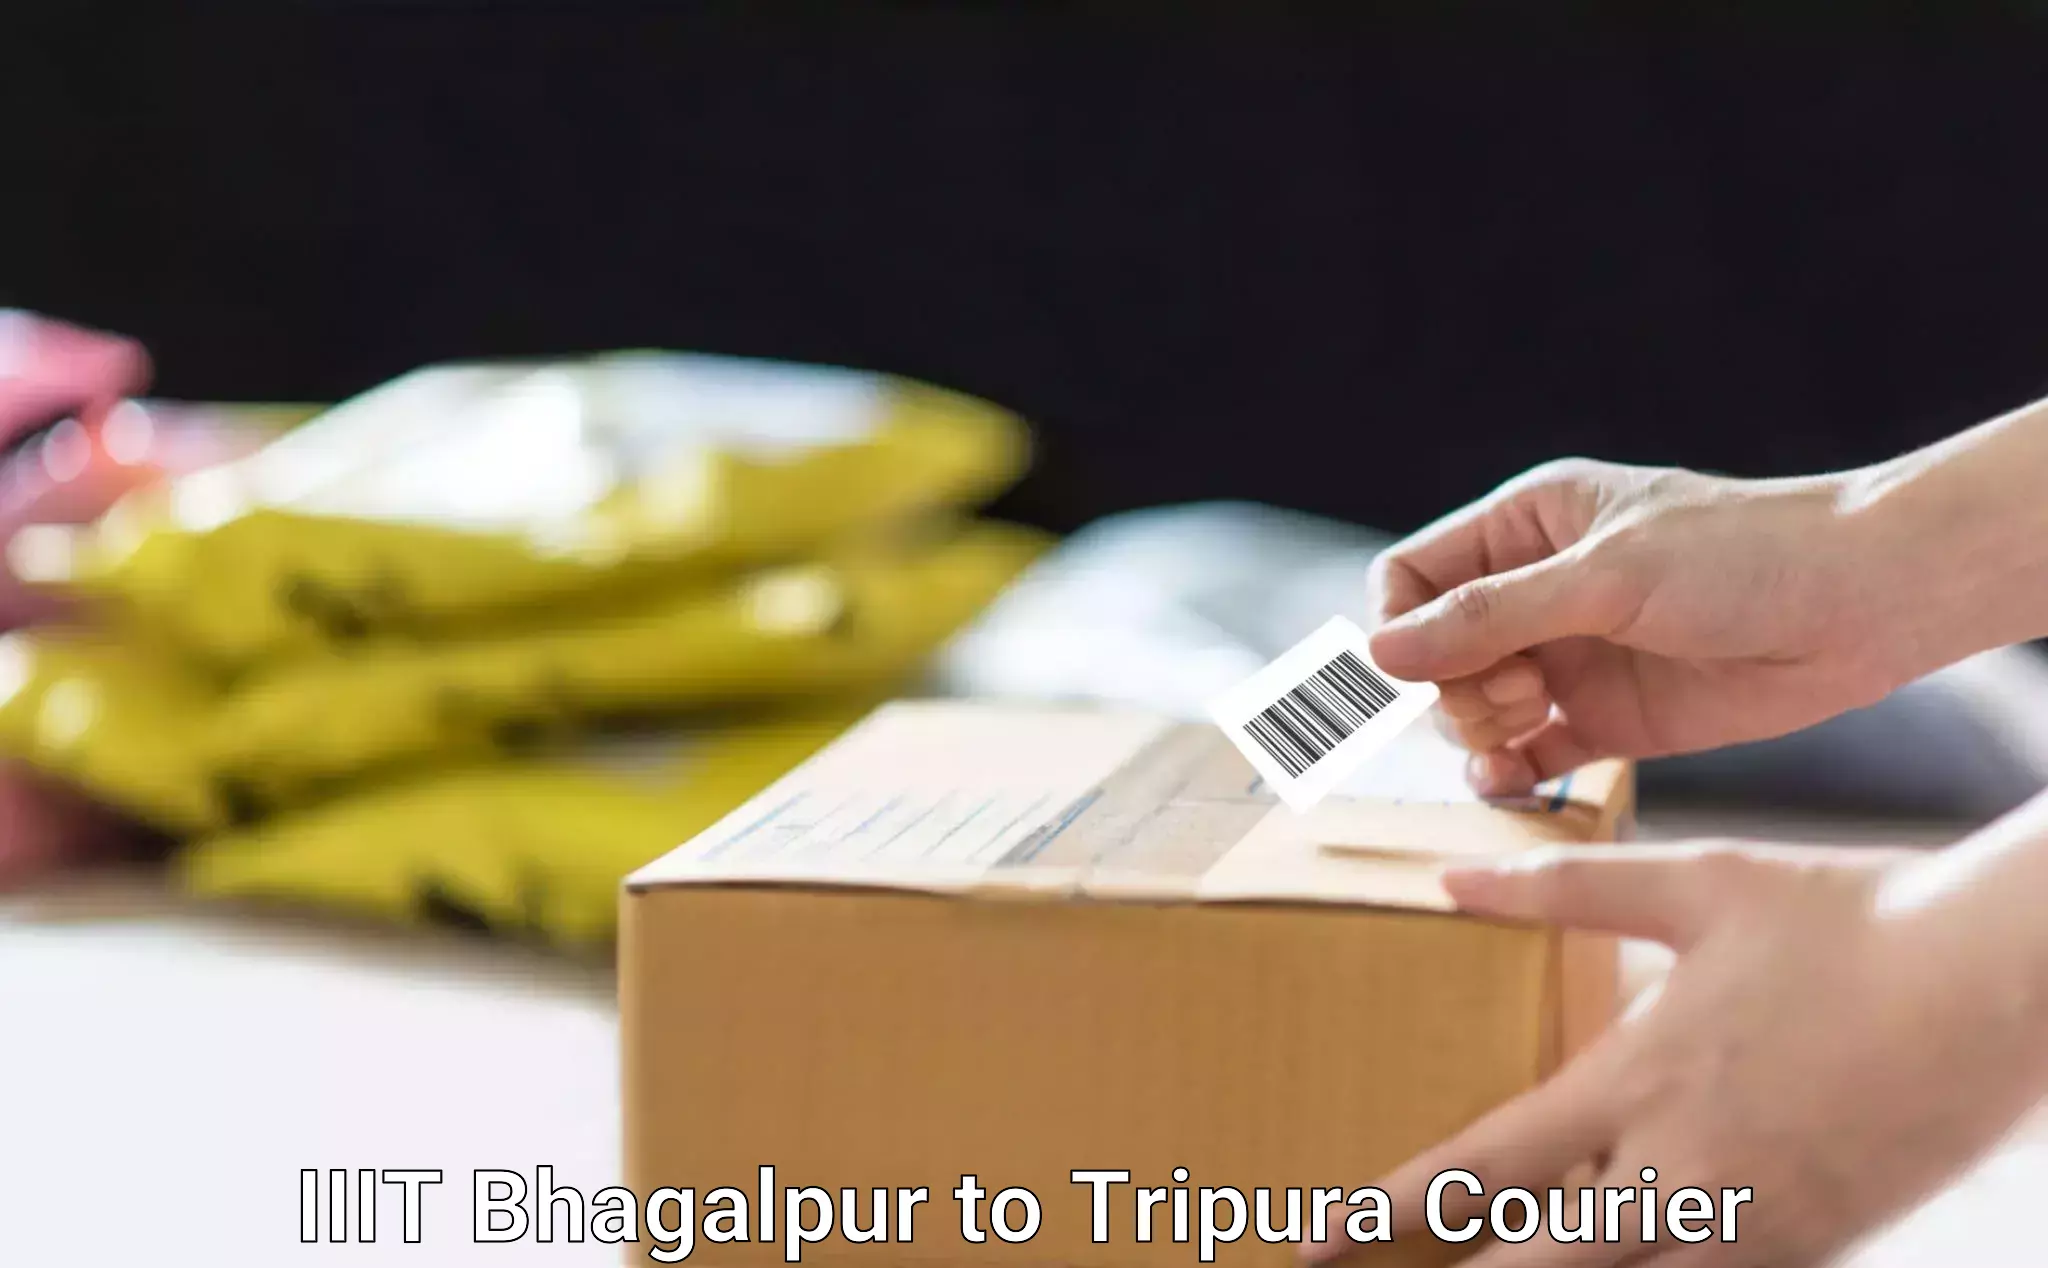 Household goods movers IIIT Bhagalpur to Udaipur Tripura